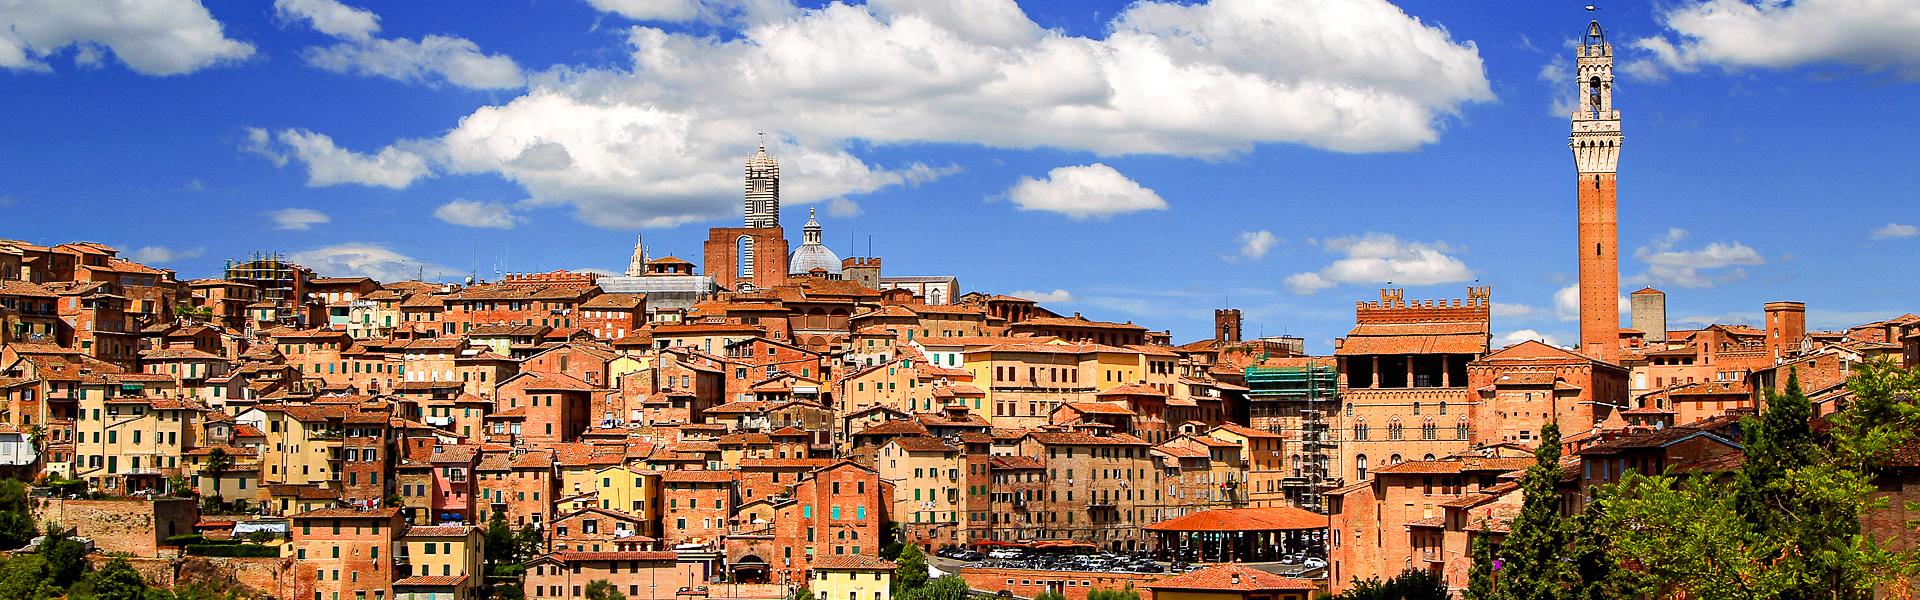 Skyline von Siena mit dem Torre del Mangia |  Roland Marske, Jules Verne Berlin / CHamleon